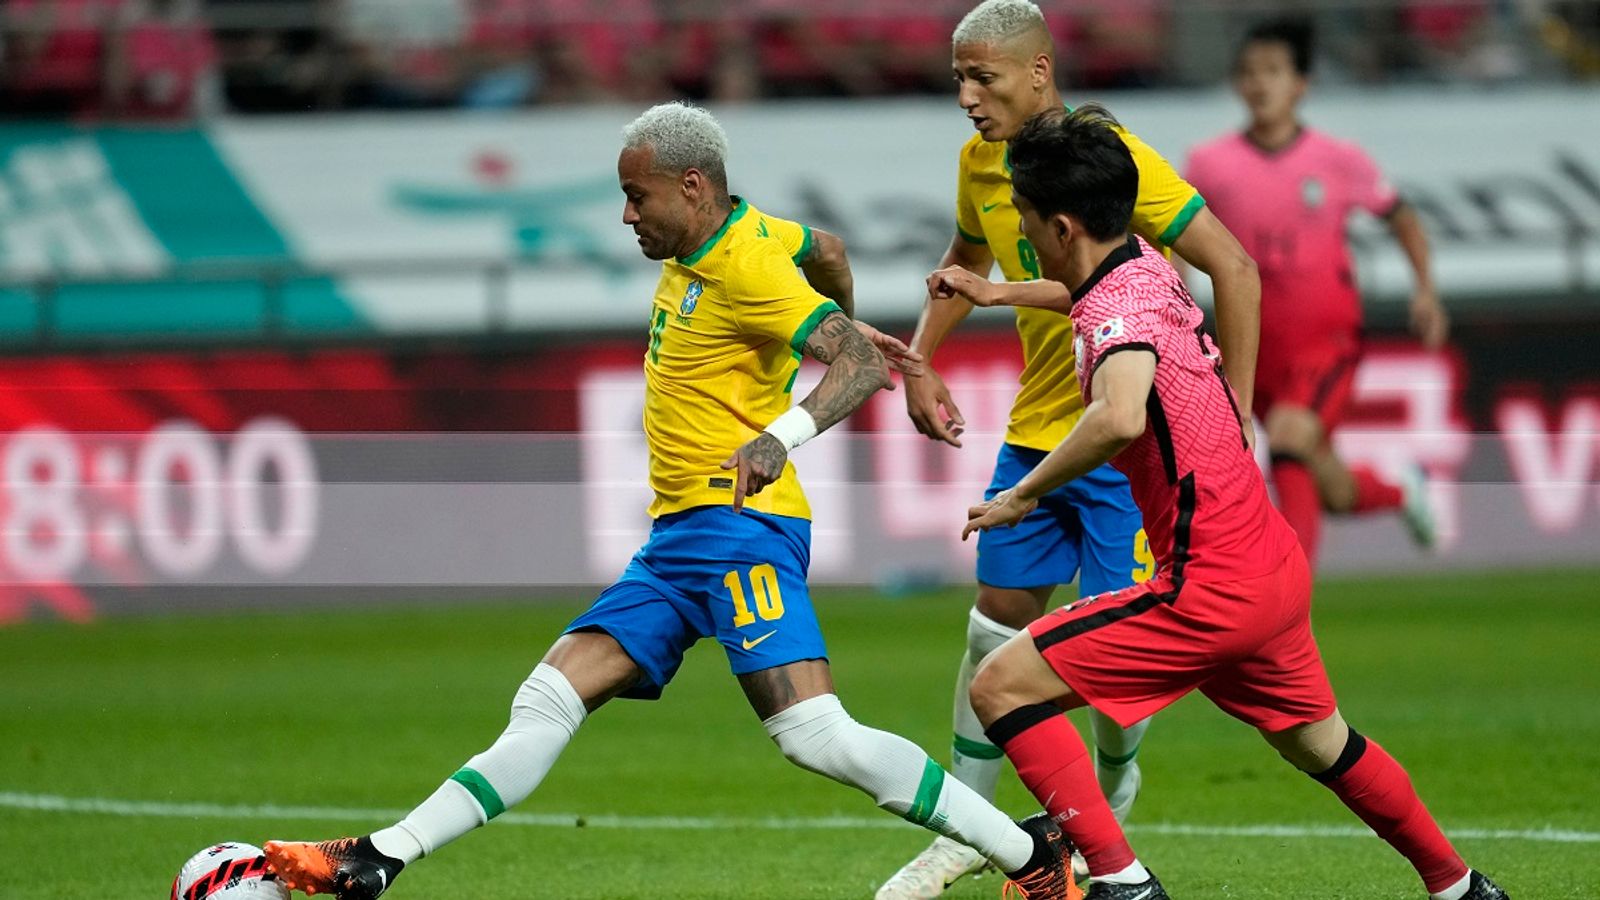 代表チーム: ネイマールのブラジルと DFB 日本の対戦相手の勝利 | サッカーニュース